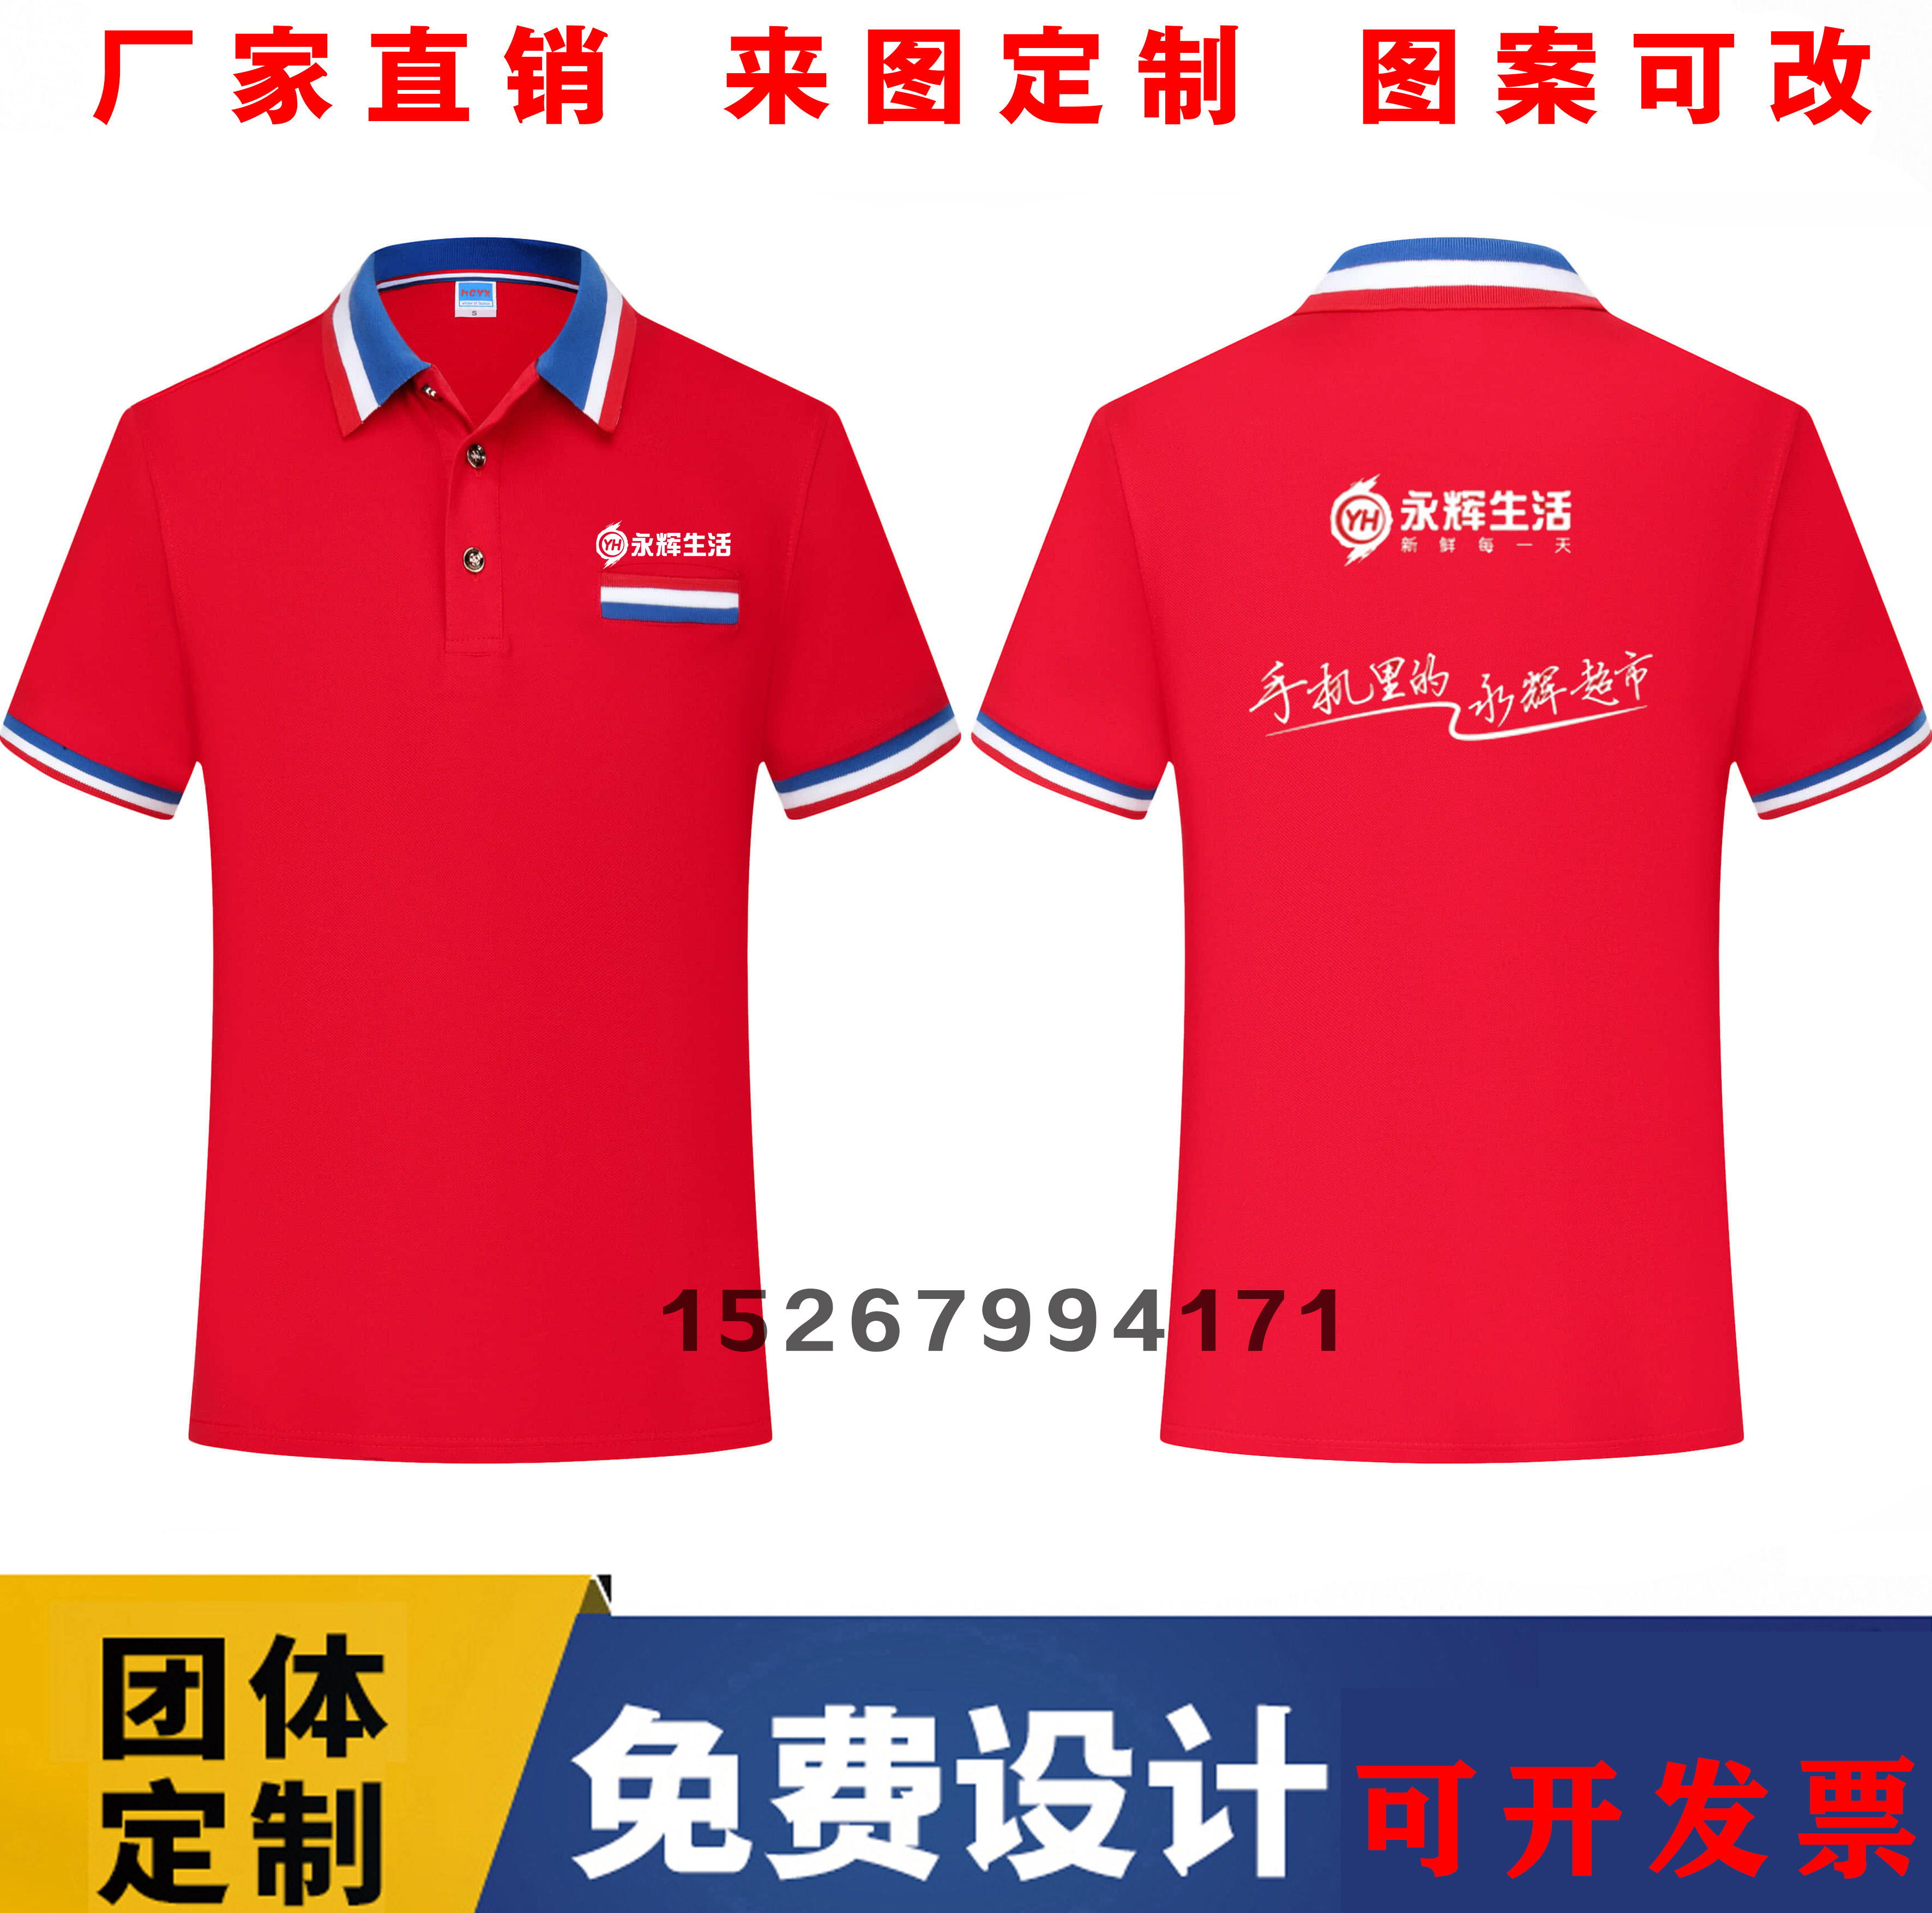 夏季永辉生活工作服装定制T恤男女纯棉超市售员广告衫印logo